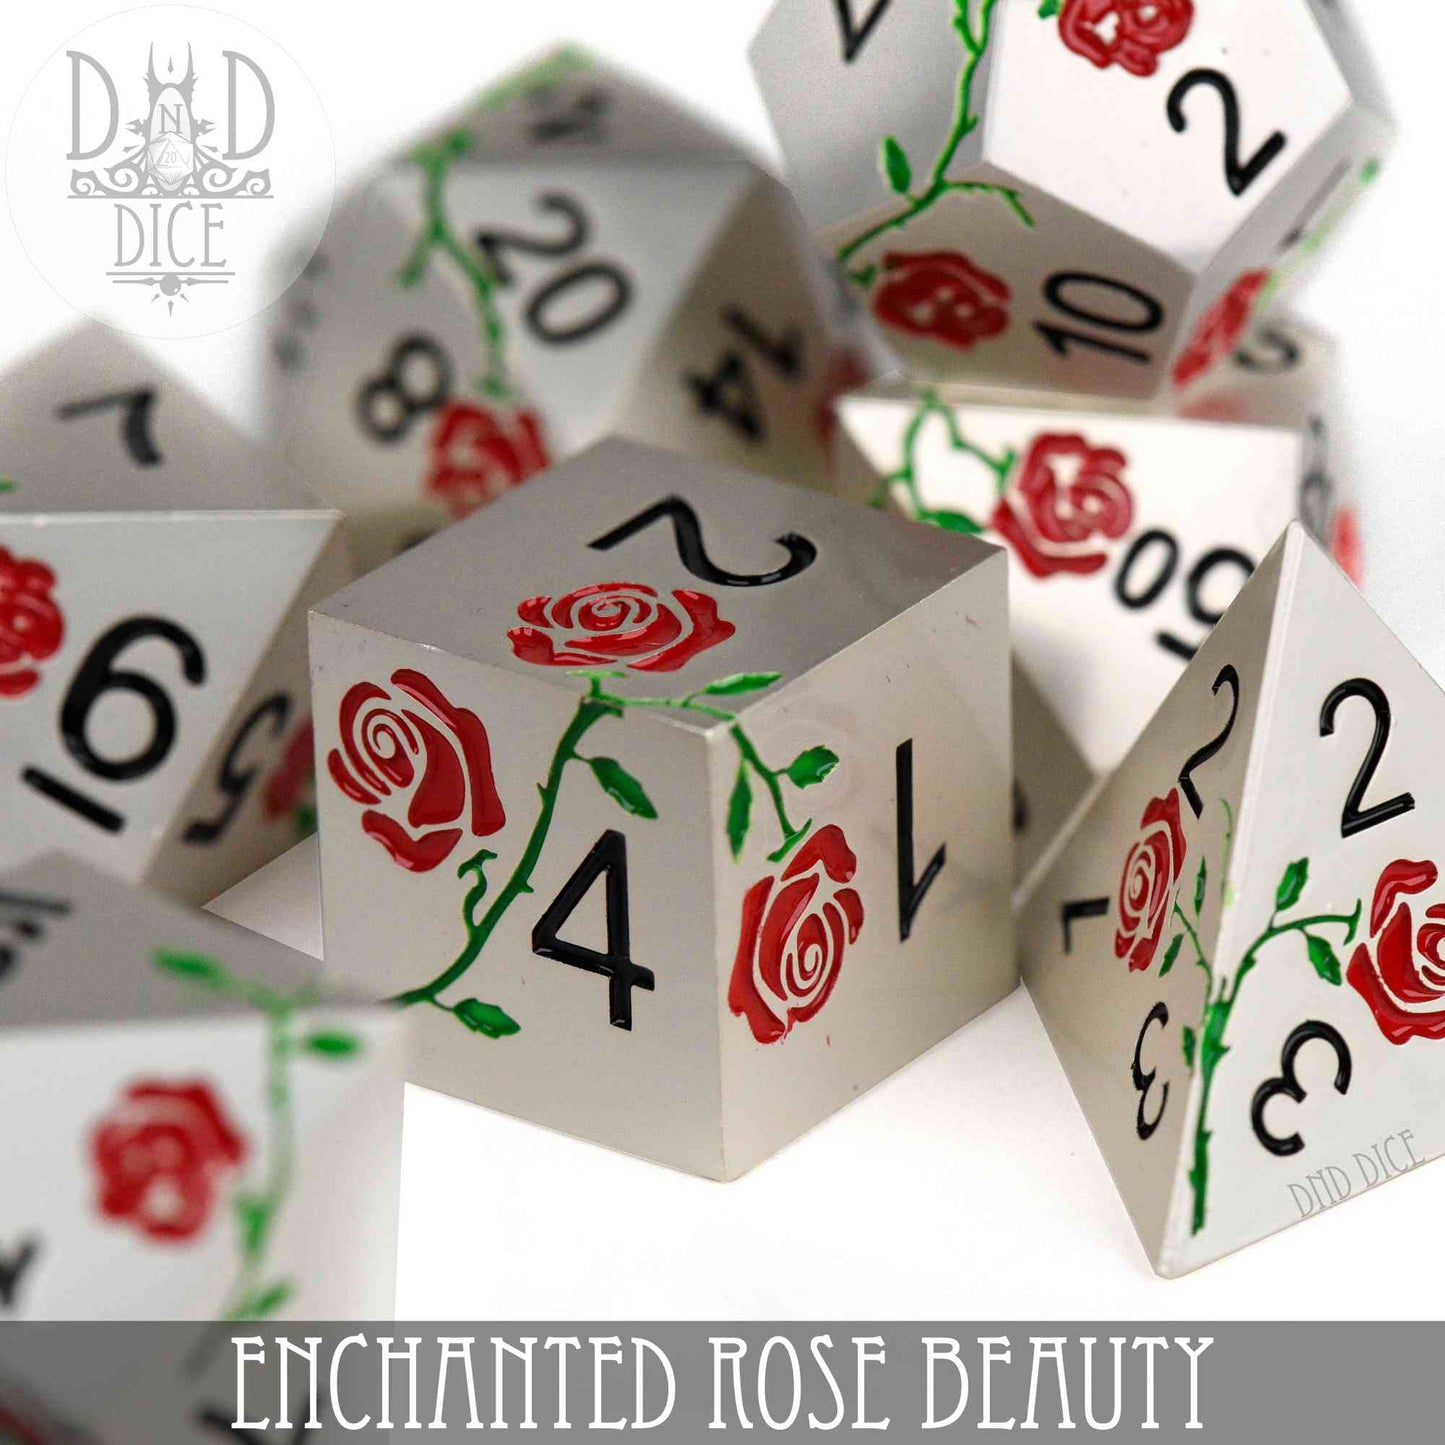 Enchanted Rose : Beauté - Jeu de dés en métal